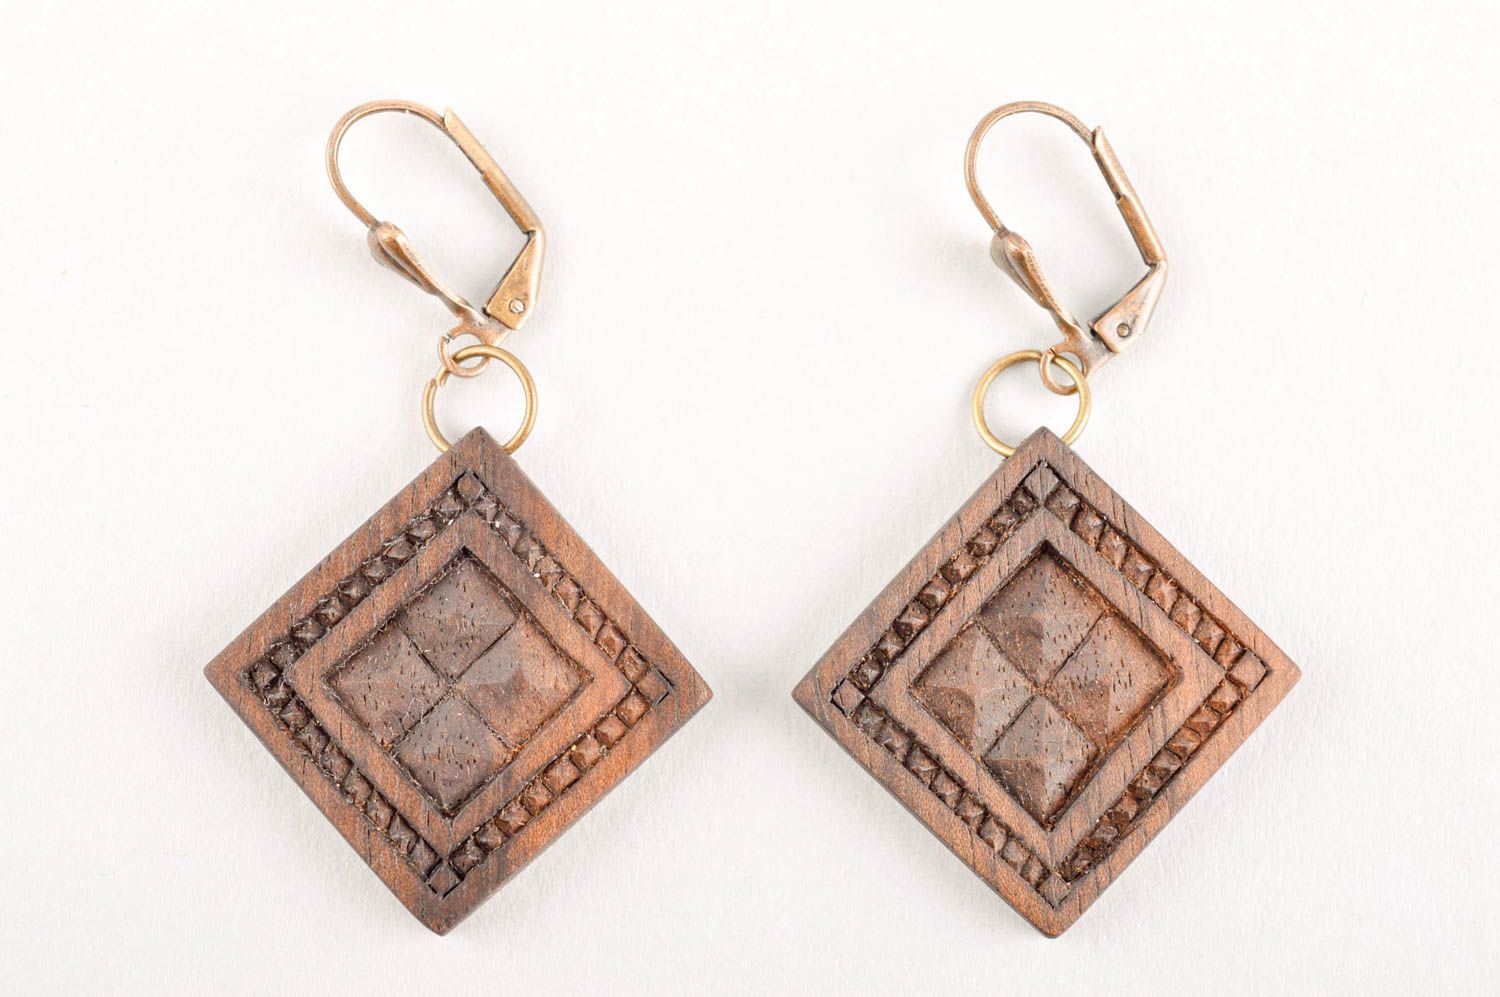 Handmade earrings unusual accessories wooden earrings wooden jewelry gift ideas photo 4